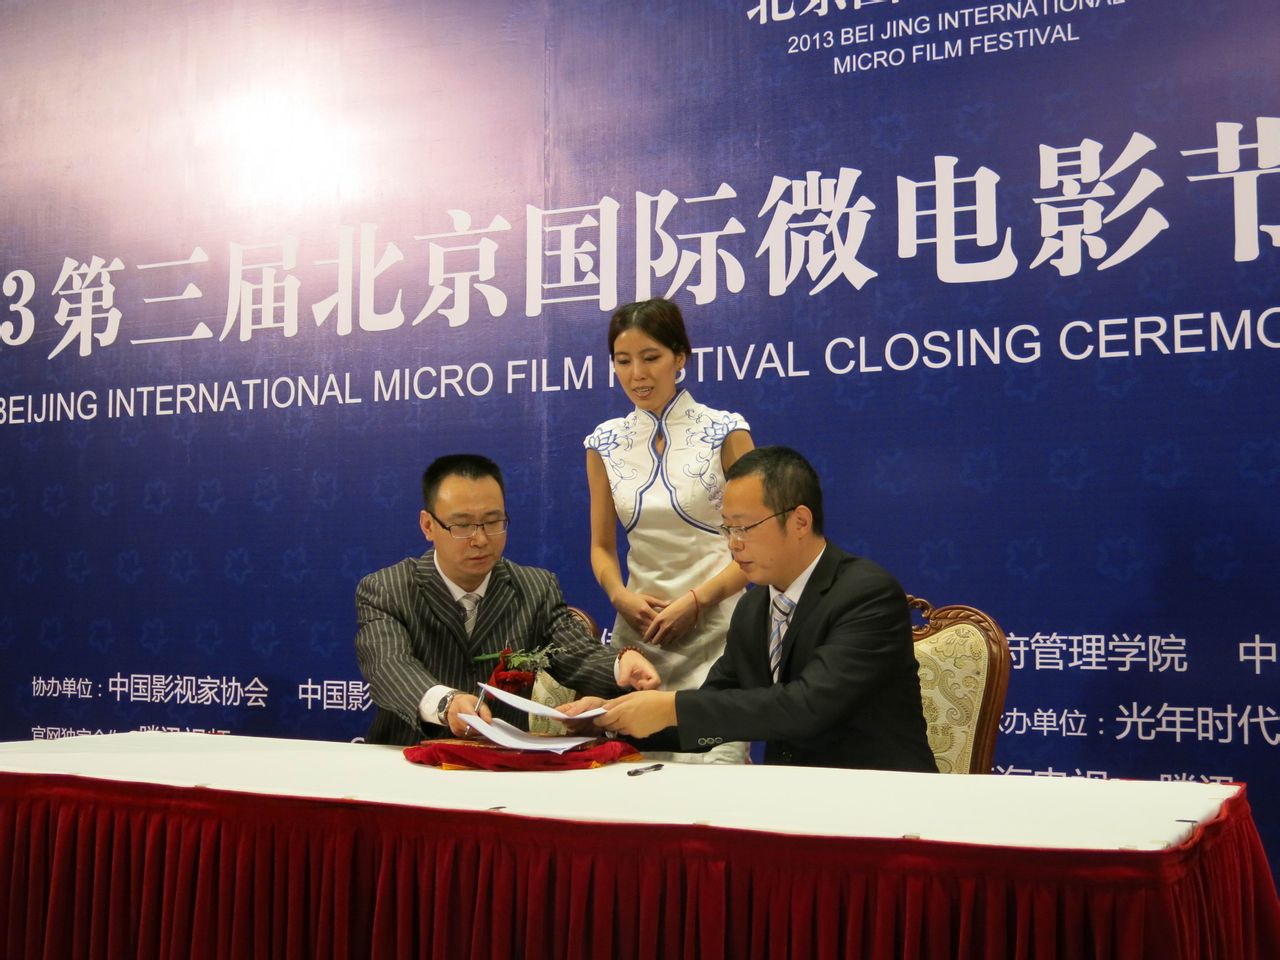 北京國際微電影節與北京國際著作權中心簽約